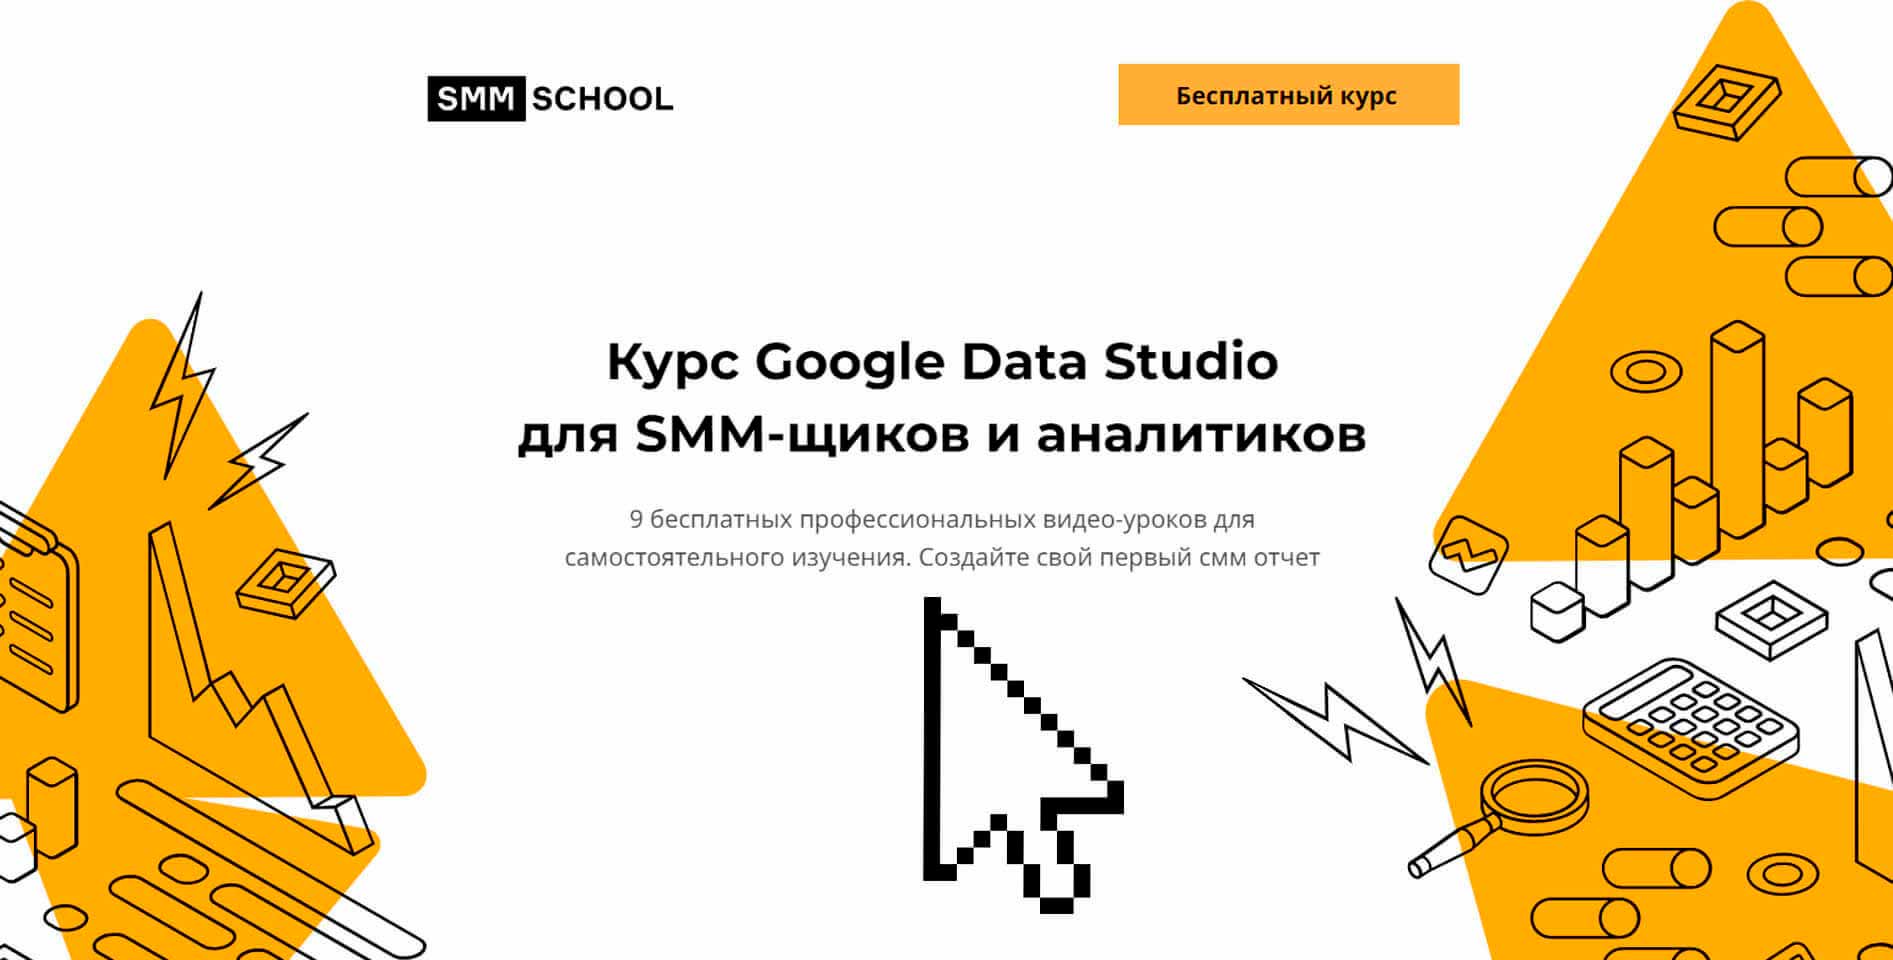   SMM.school — «Google Data Studio для SMM-щиков и аналитиков»